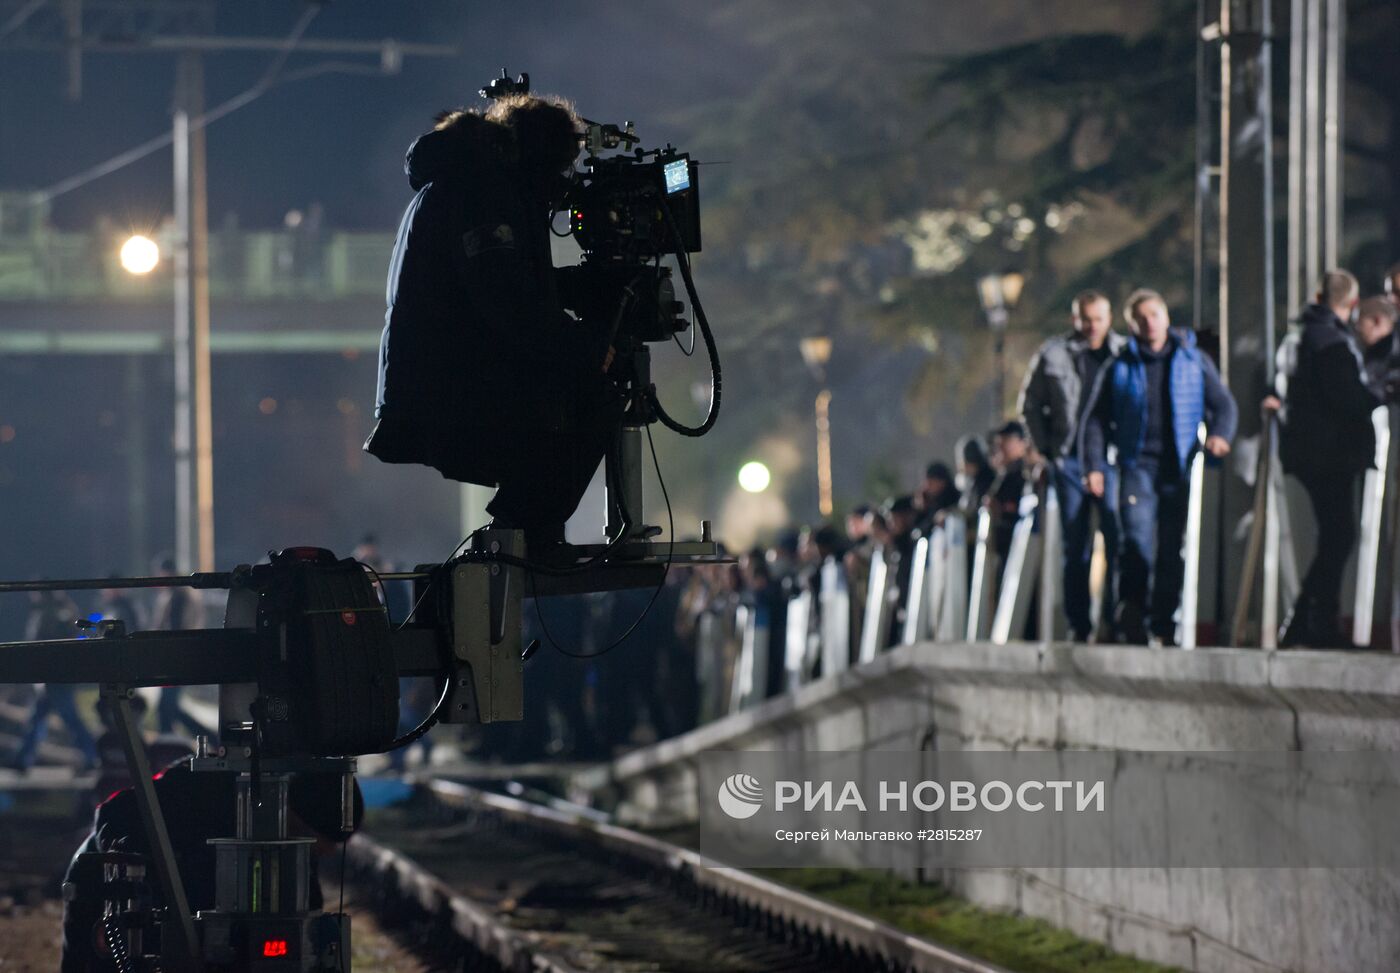 Съемки художественного фильма "Крым" в Симферополе